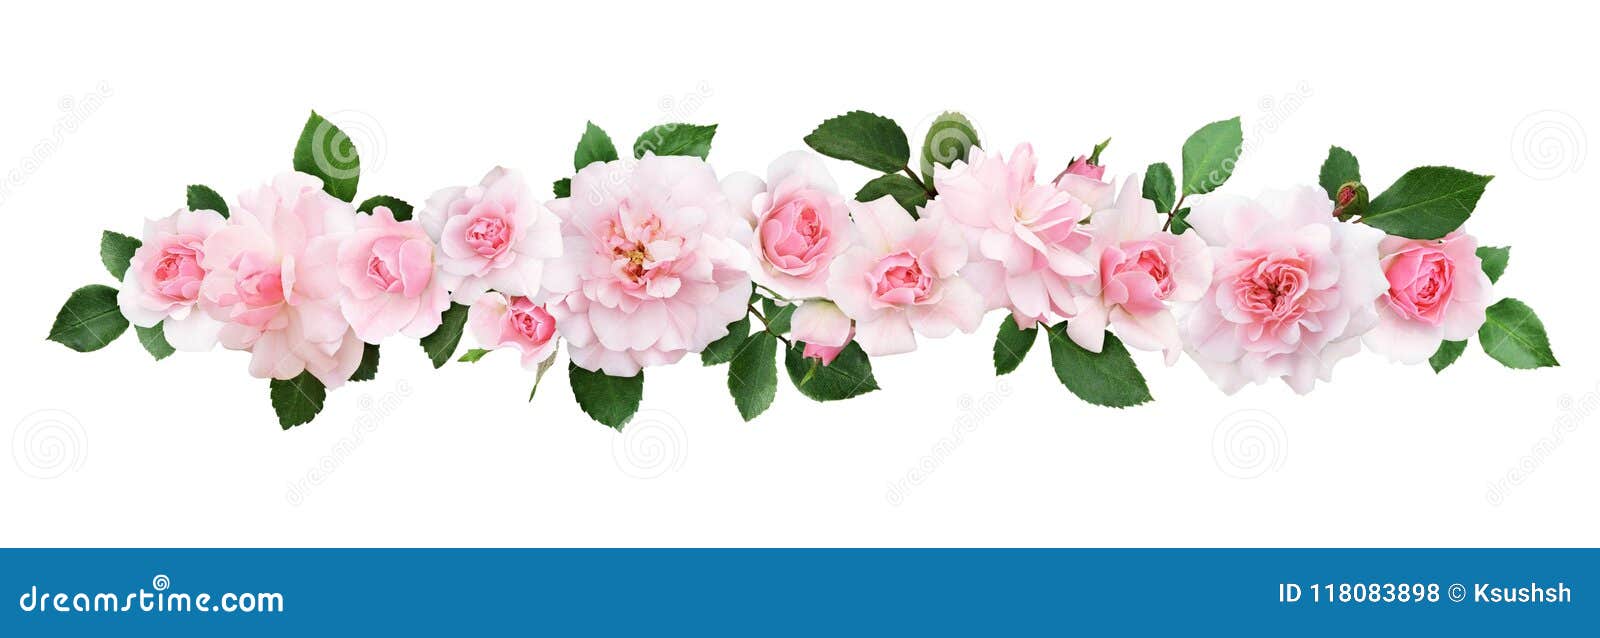 Fleurs Et Feuilles De Rose De Rose Dans Une Ligne Composition Photo stock -  Image du aimer, fleurs: 118083898